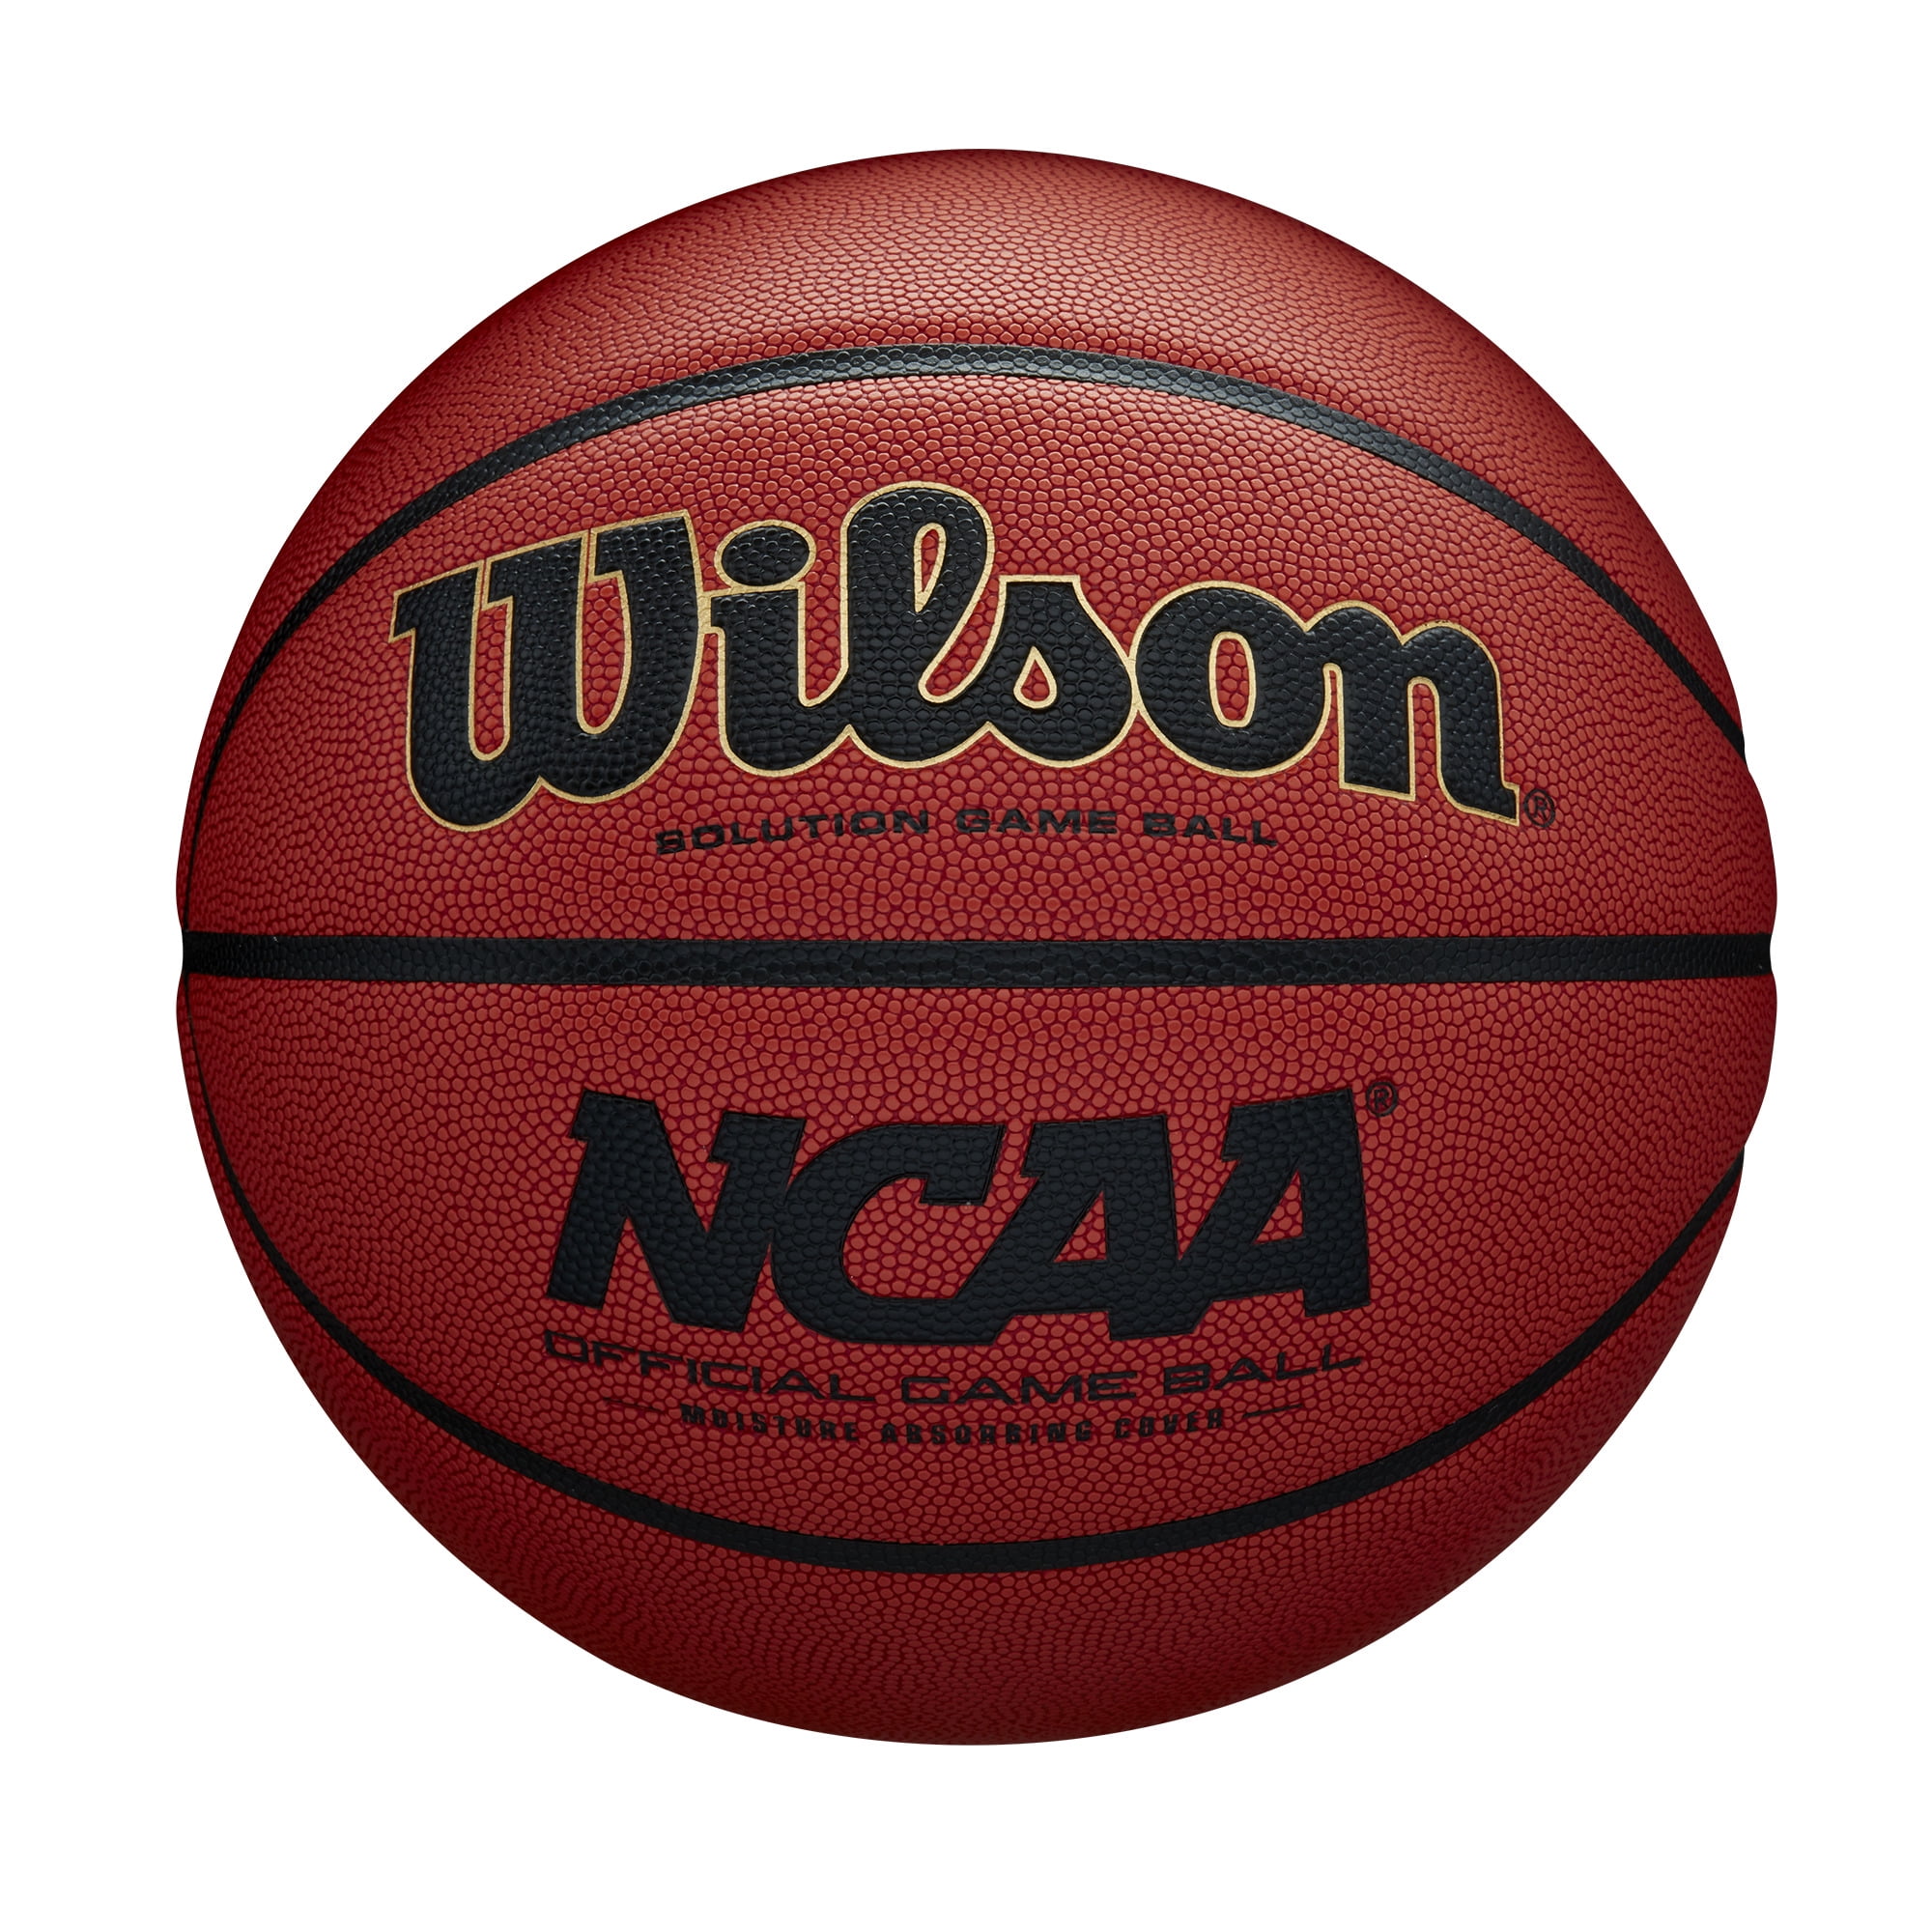 Wilson NCAA Official Game Basketball